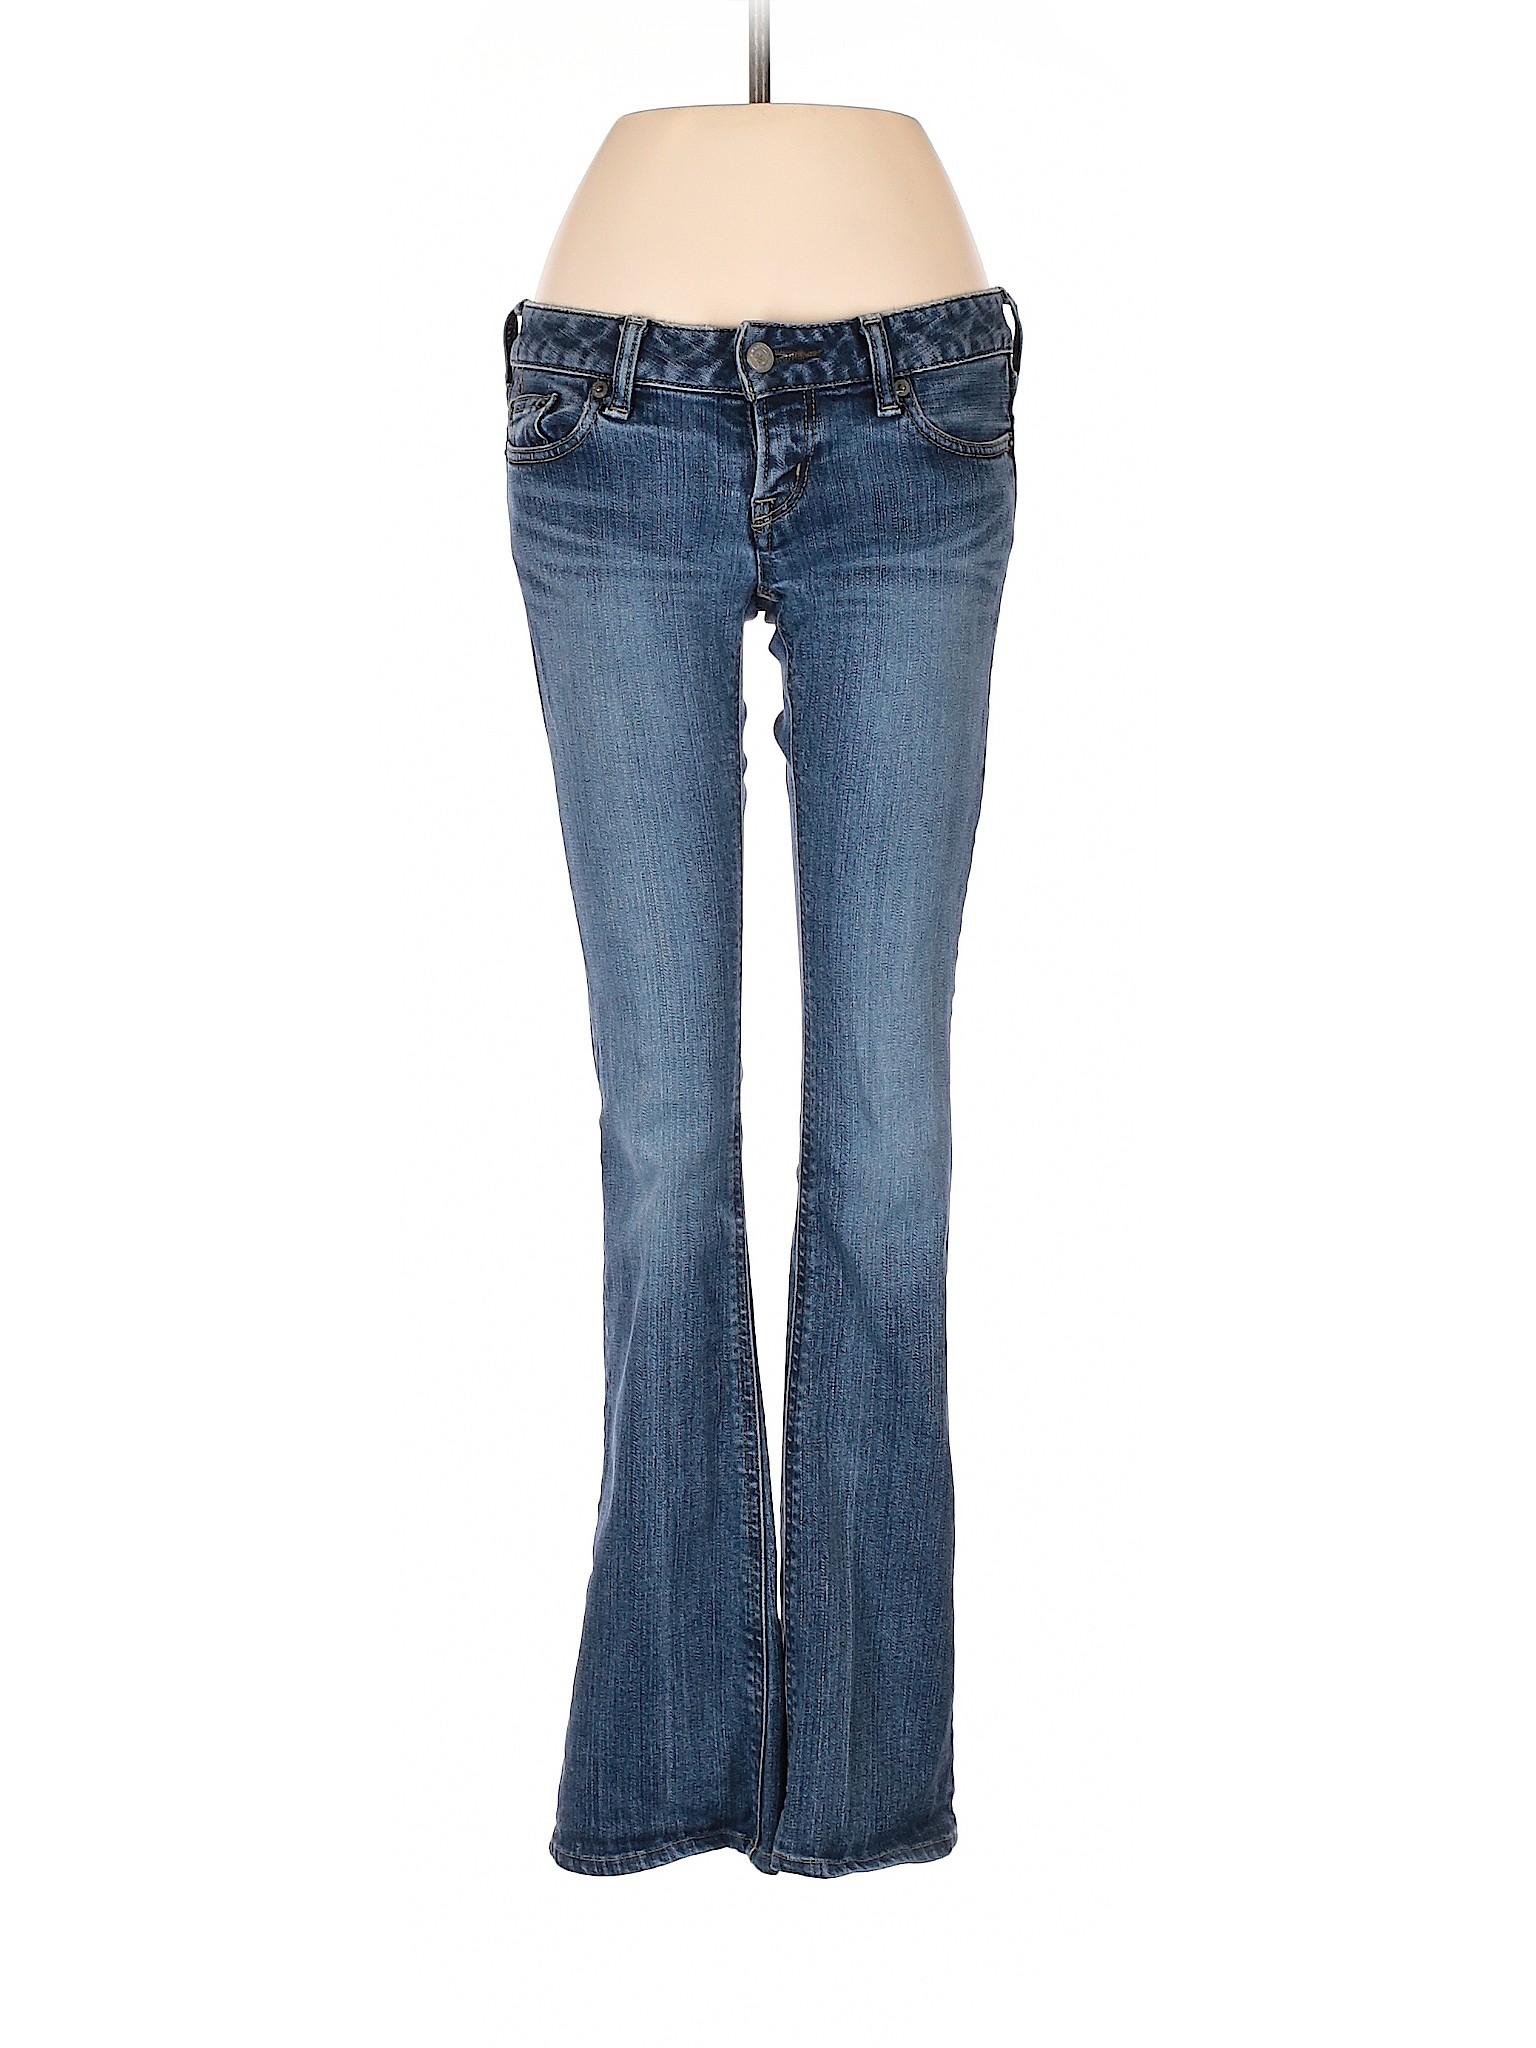 Black Women Blue Jeans 24W | eBay